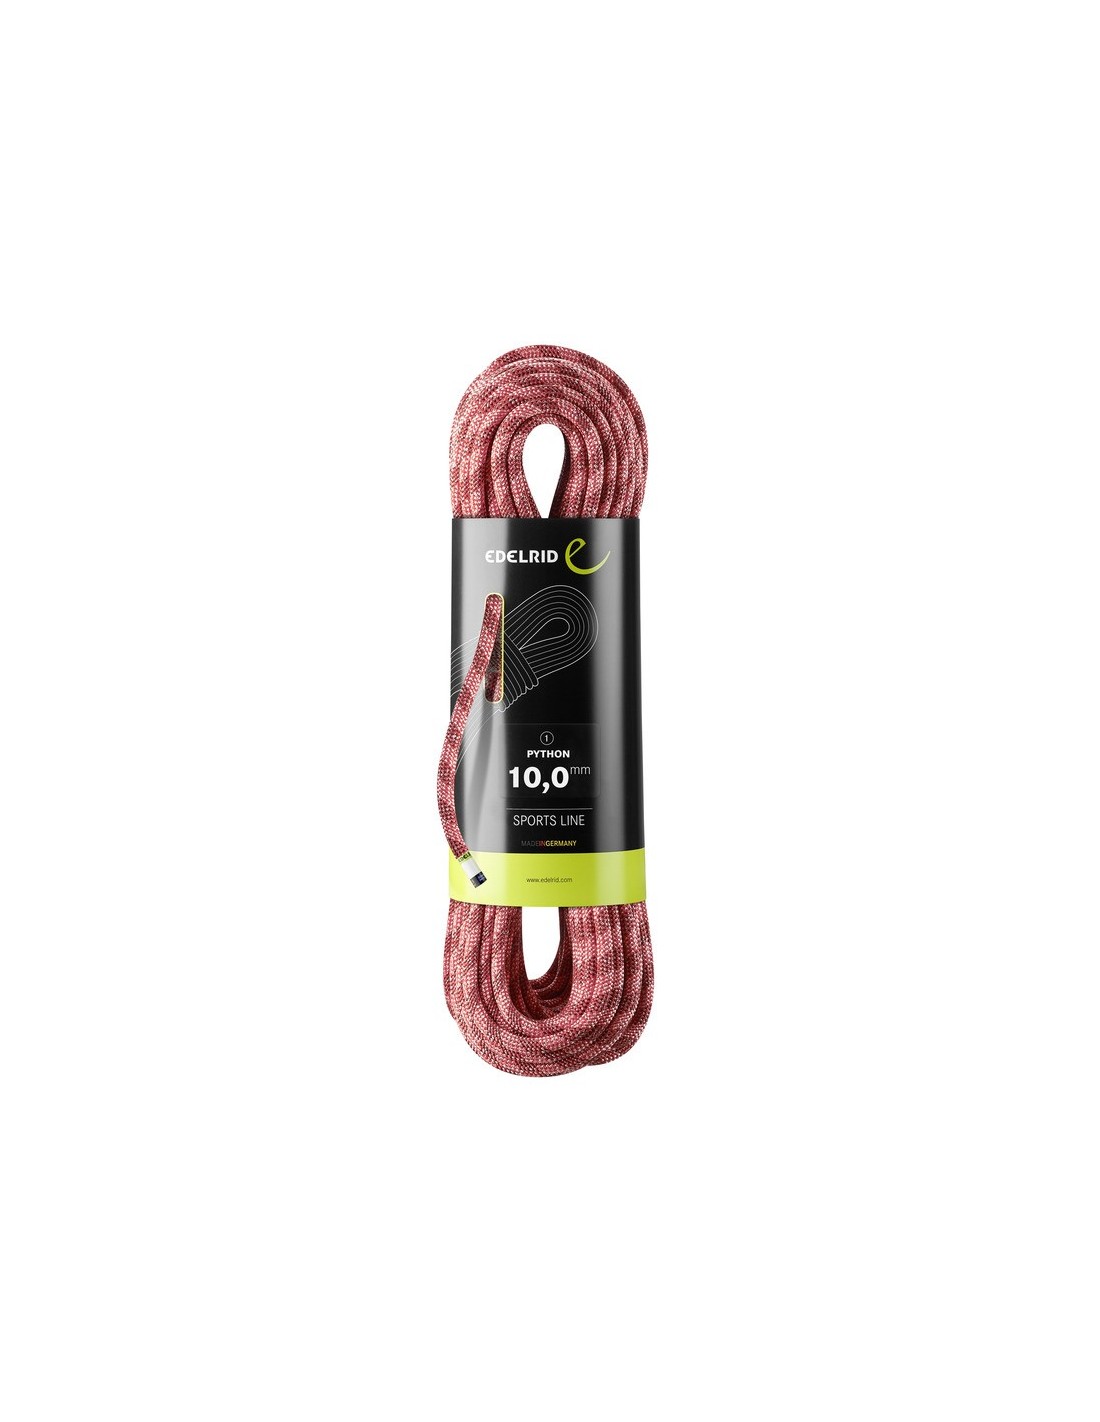 Edelrid Kletterseil Python 10.0mm, red, 40 Meter von Edelrid